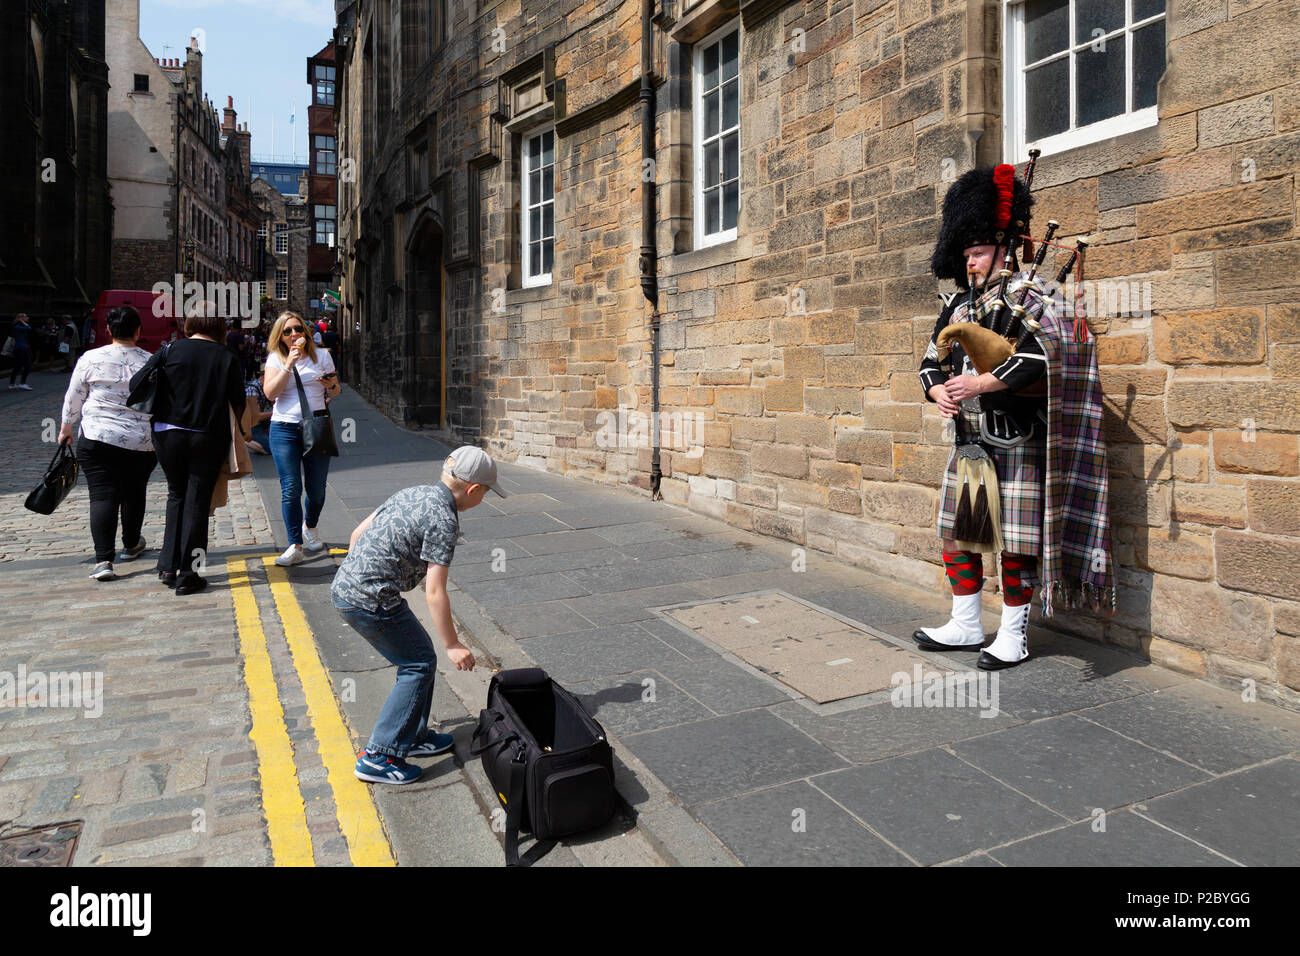 Kind Geld zu geben, ein dudelsackspieler Straßenmusik, die Royal Mile, Edinburgh Altstadt zum Weltkulturerbe der UNESCO, Edinburgh Schottland Großbritannien Stockfoto